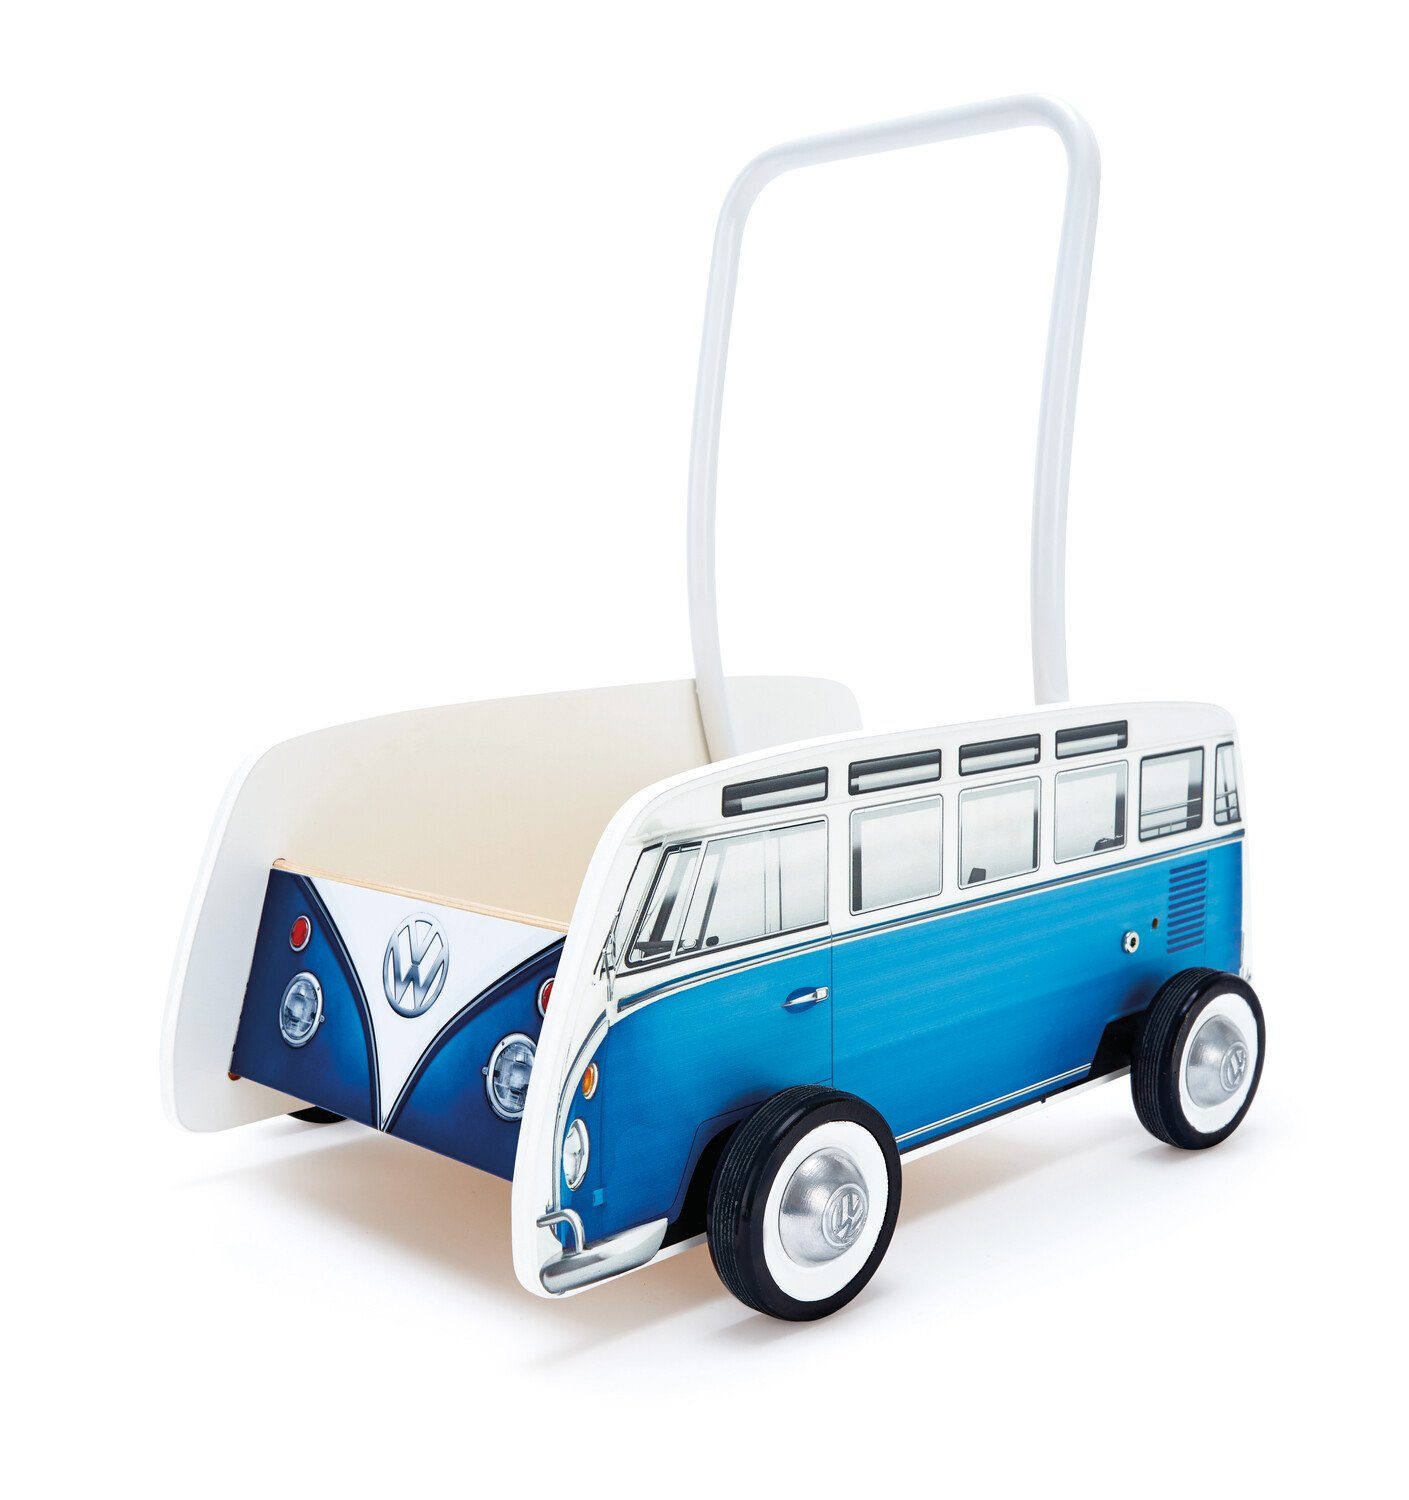 VW Collection by BRISA Lauflernwagen Volkswagen Lauflernhilfe im VW T1 Bulli Bus Design aus Holz, 47,4 x 36 x 48,3 cm Blau/Weiß | Lauflernwagen